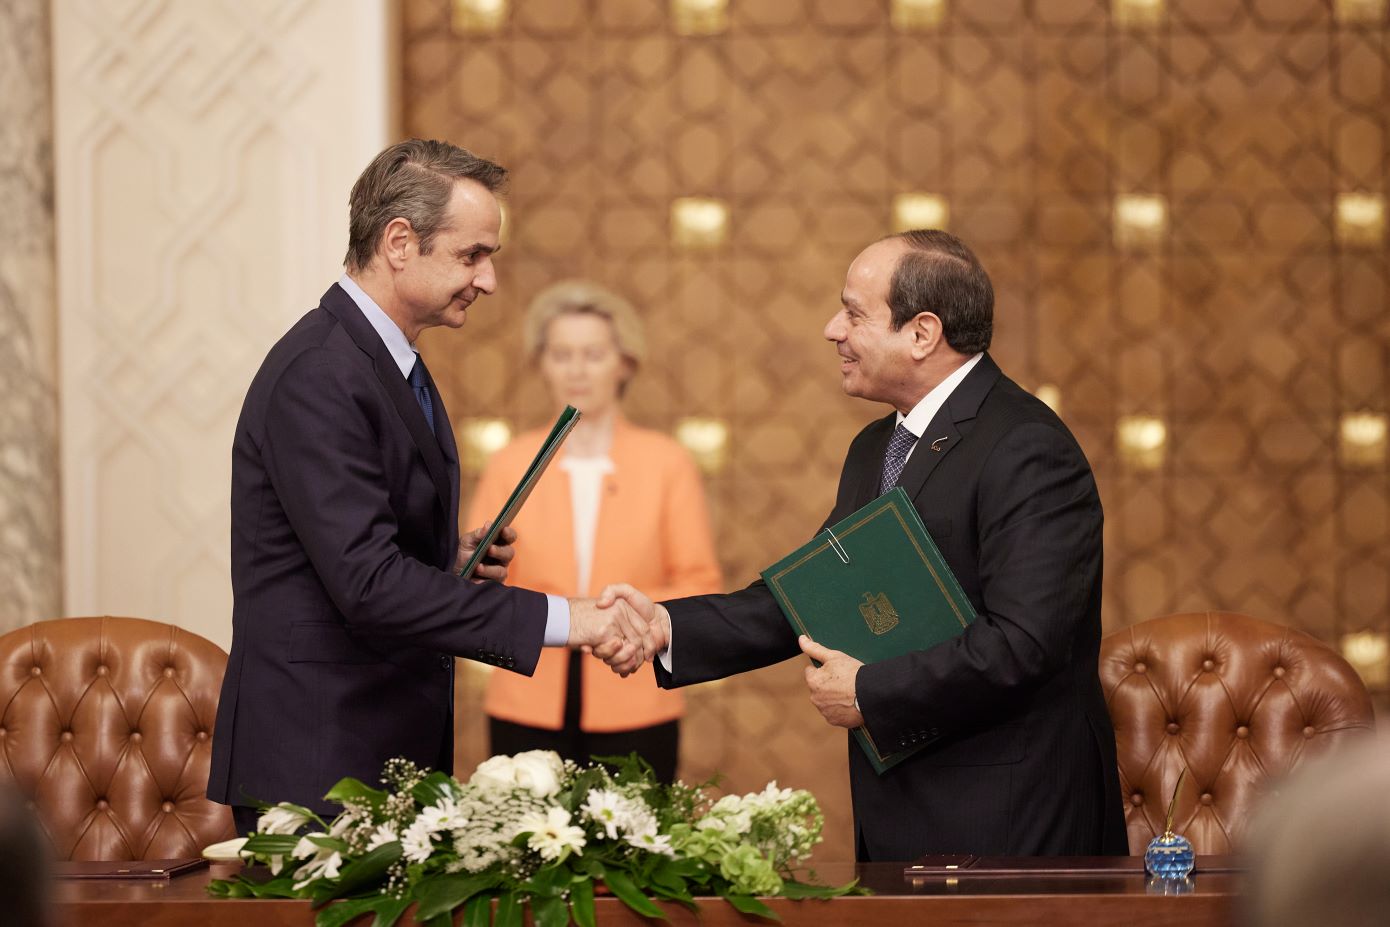 Αιγύπτιος πρέσβης: Νέα εποχή στη στρατηγική σχέση Ελλάδας – Αιγύπτου άνοιξε η επίσκεψη Μητσοτάκη στο Κάιρο